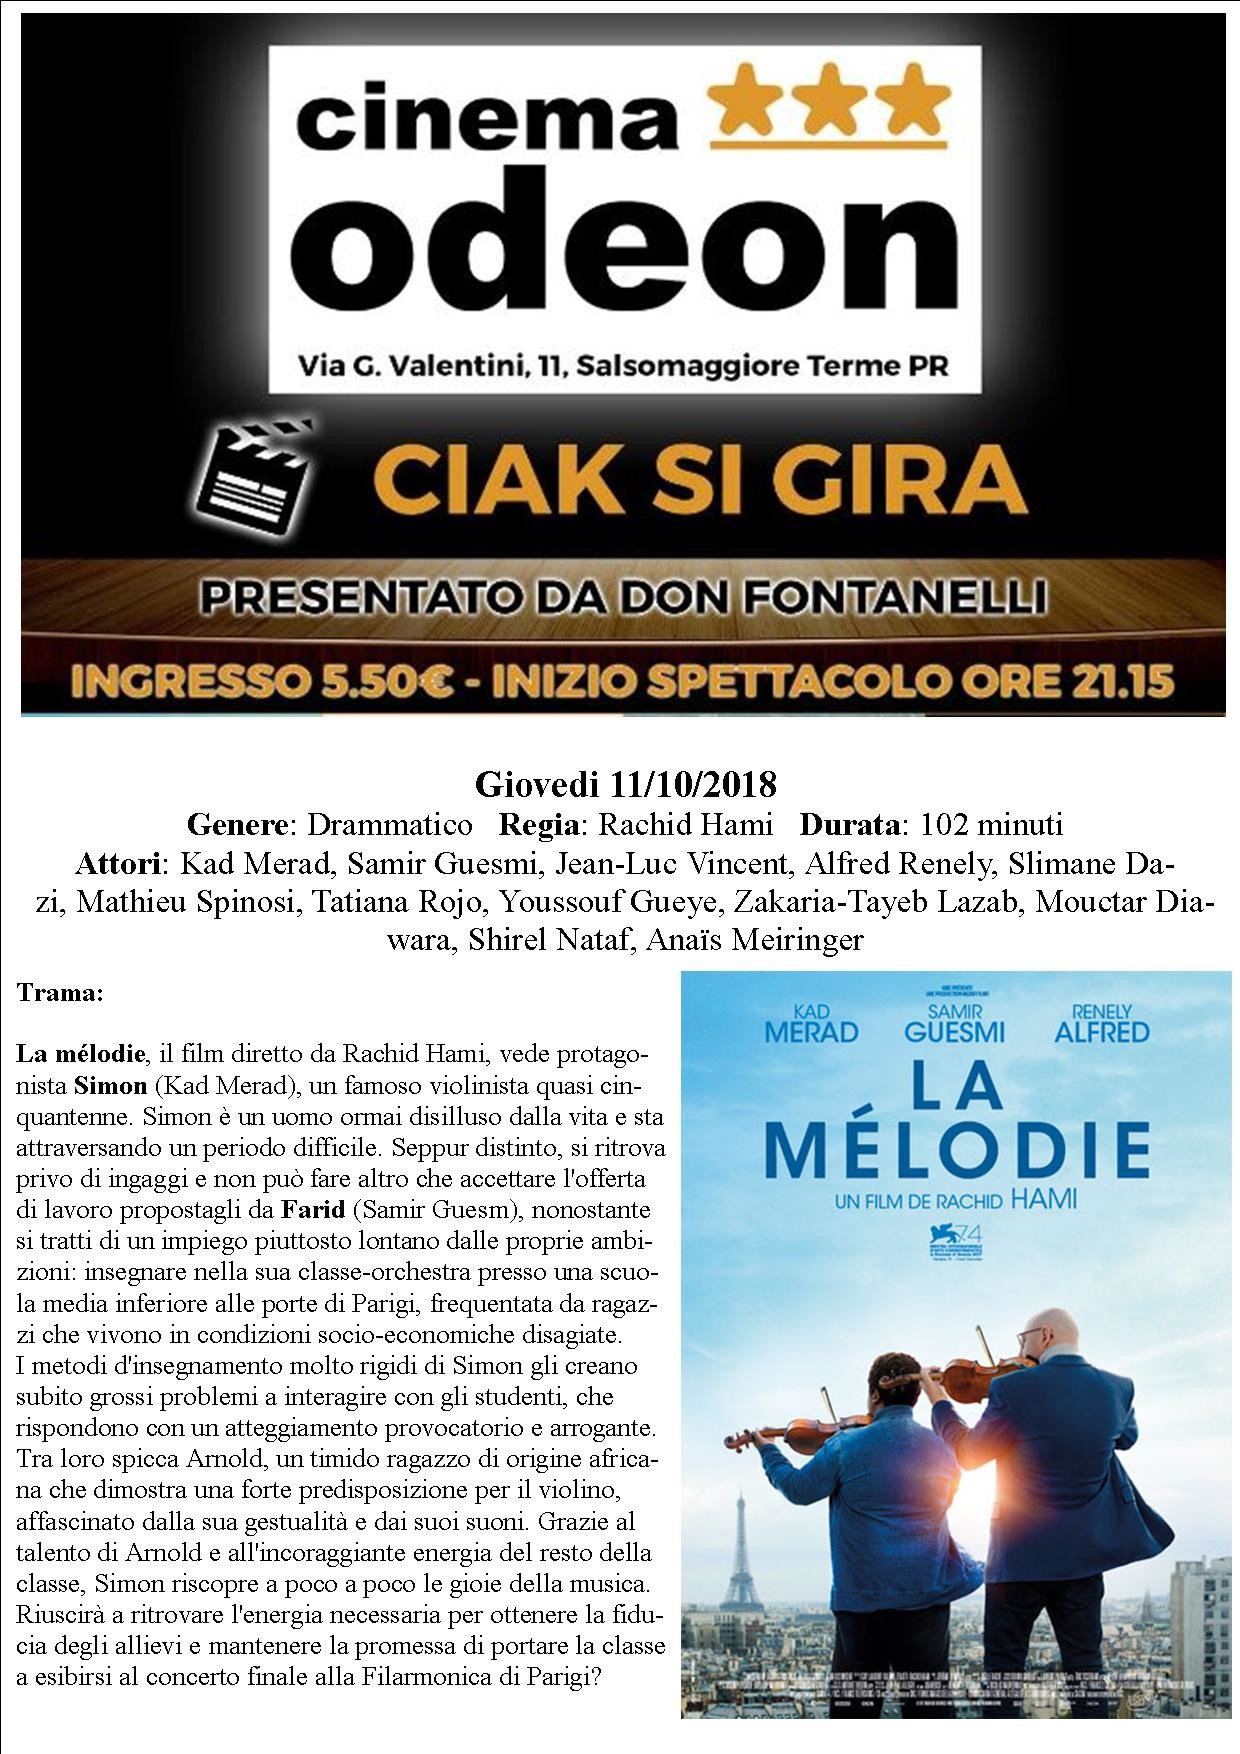 A "Ciak si gira" al cinema Odeon LA MELODIE